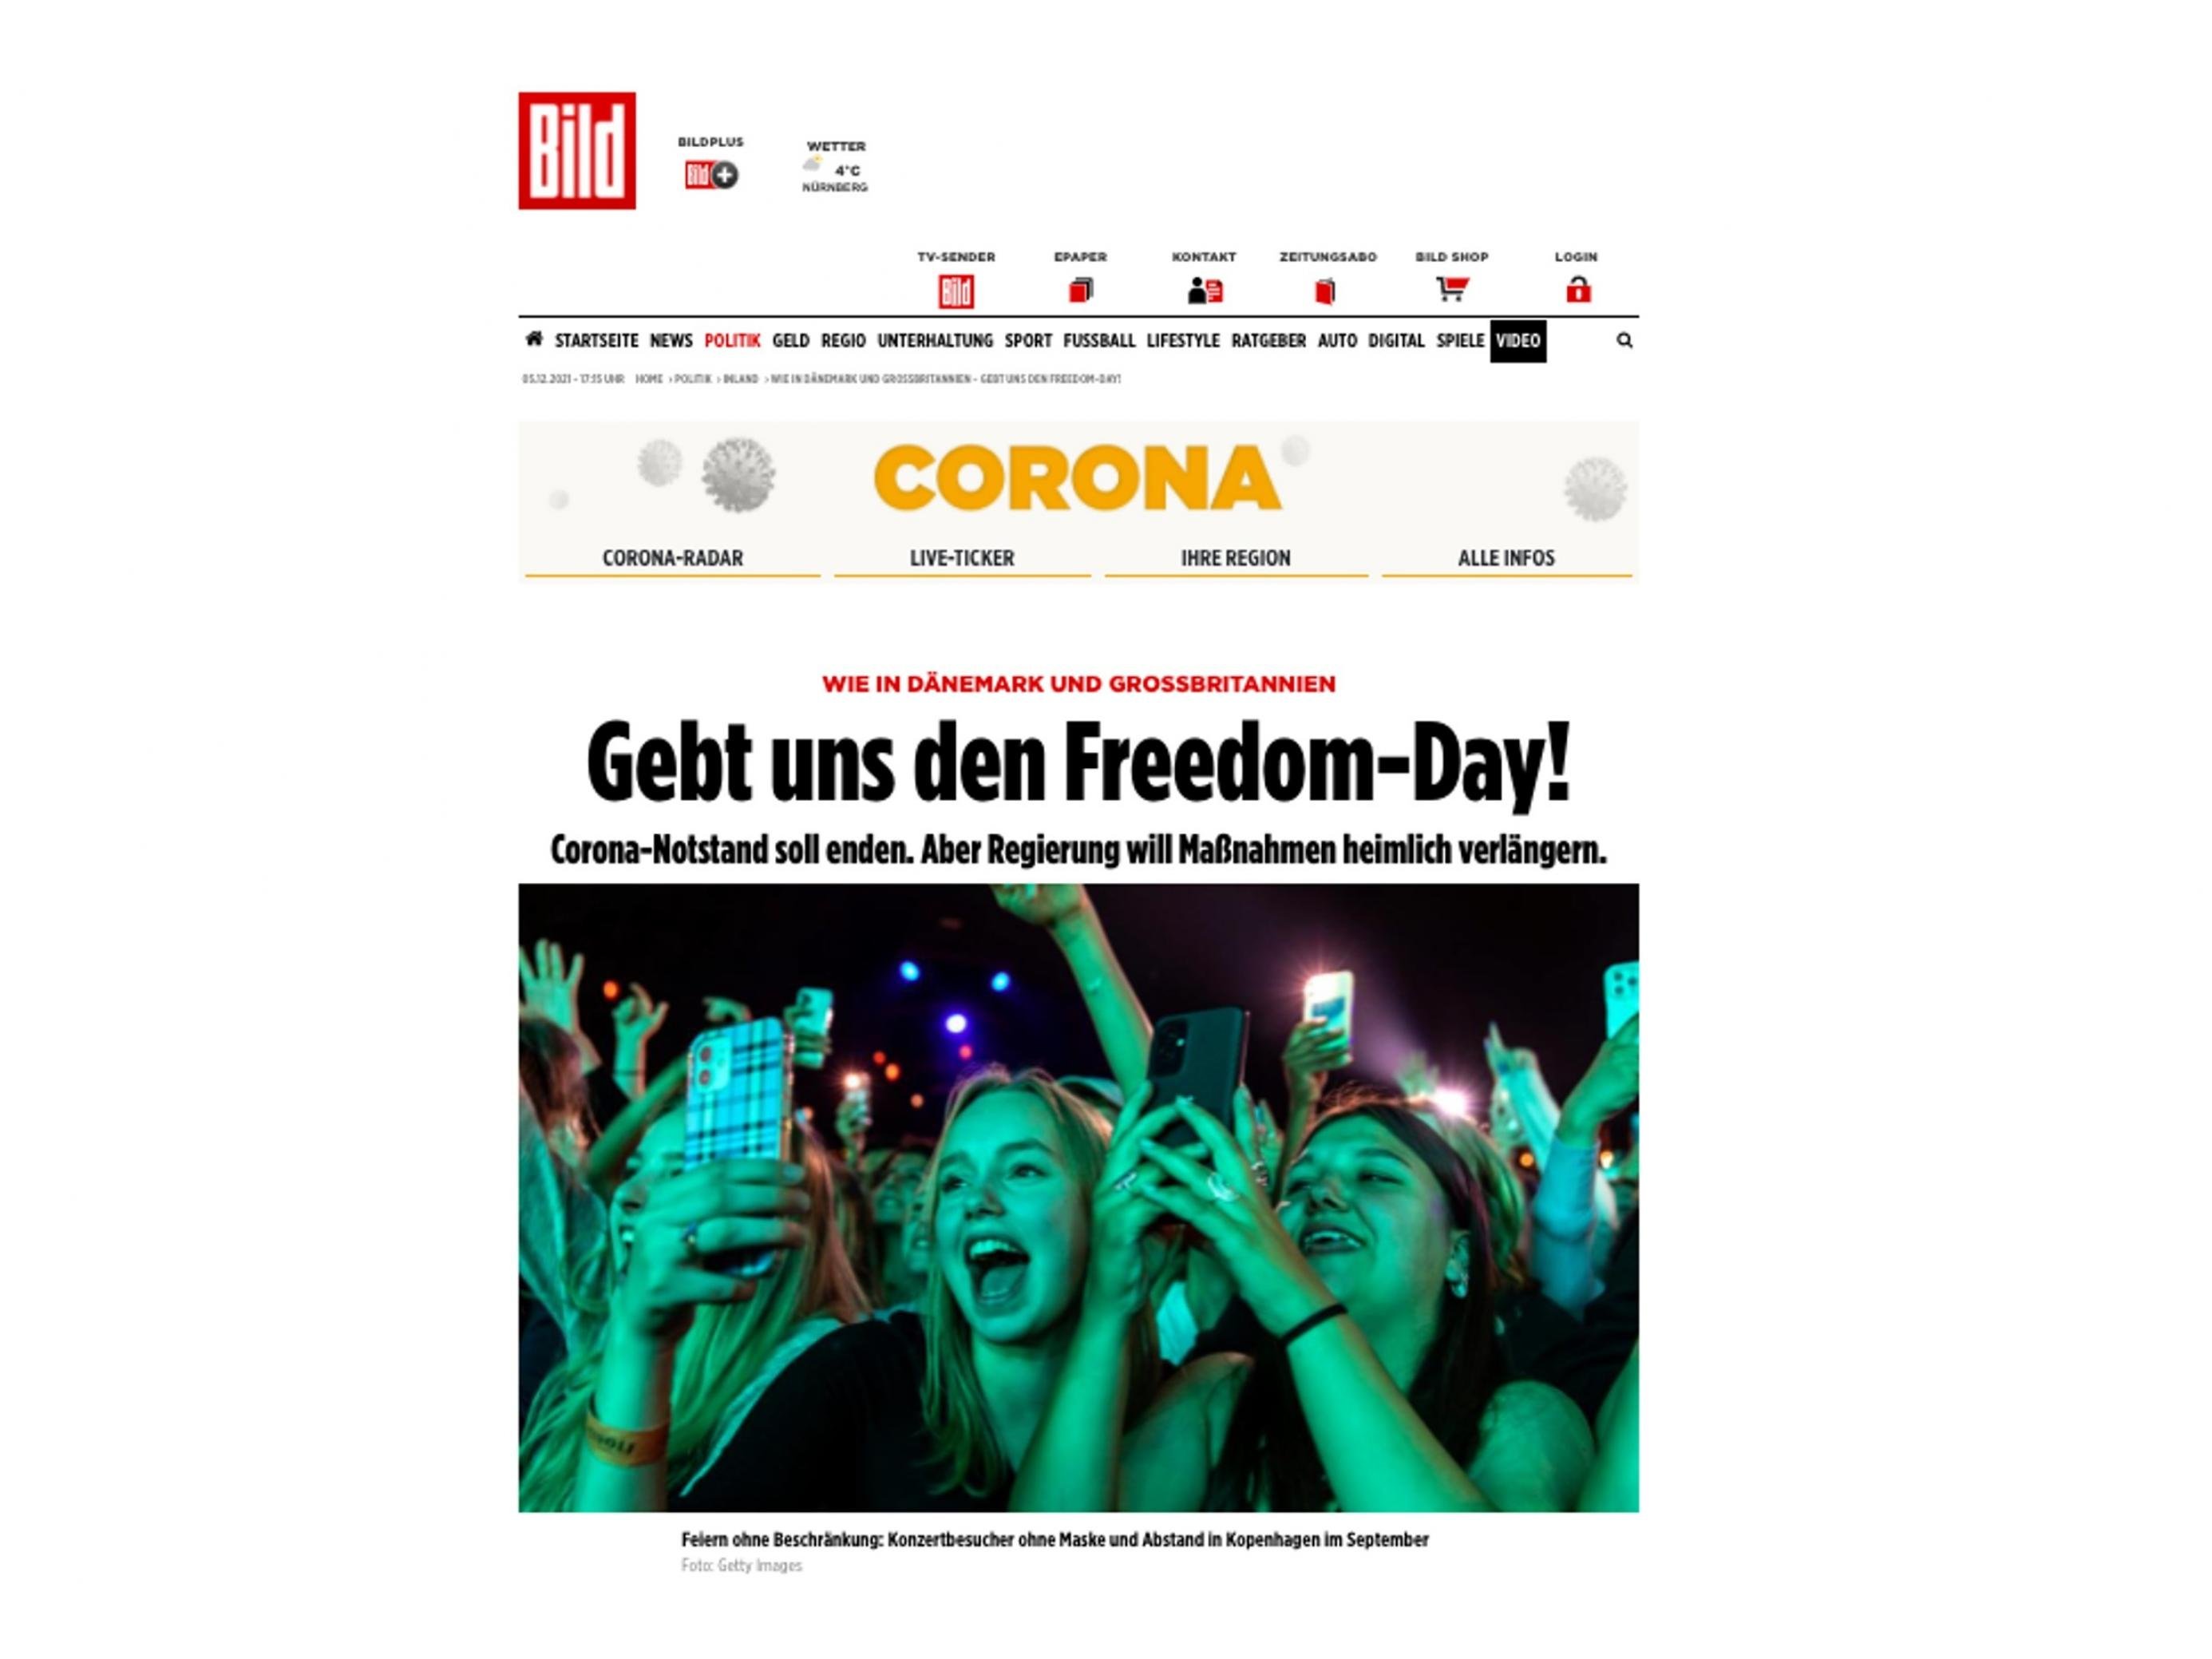 Bild-Zeitung Schlagzeile „Gebt uns den Freedom Day“.